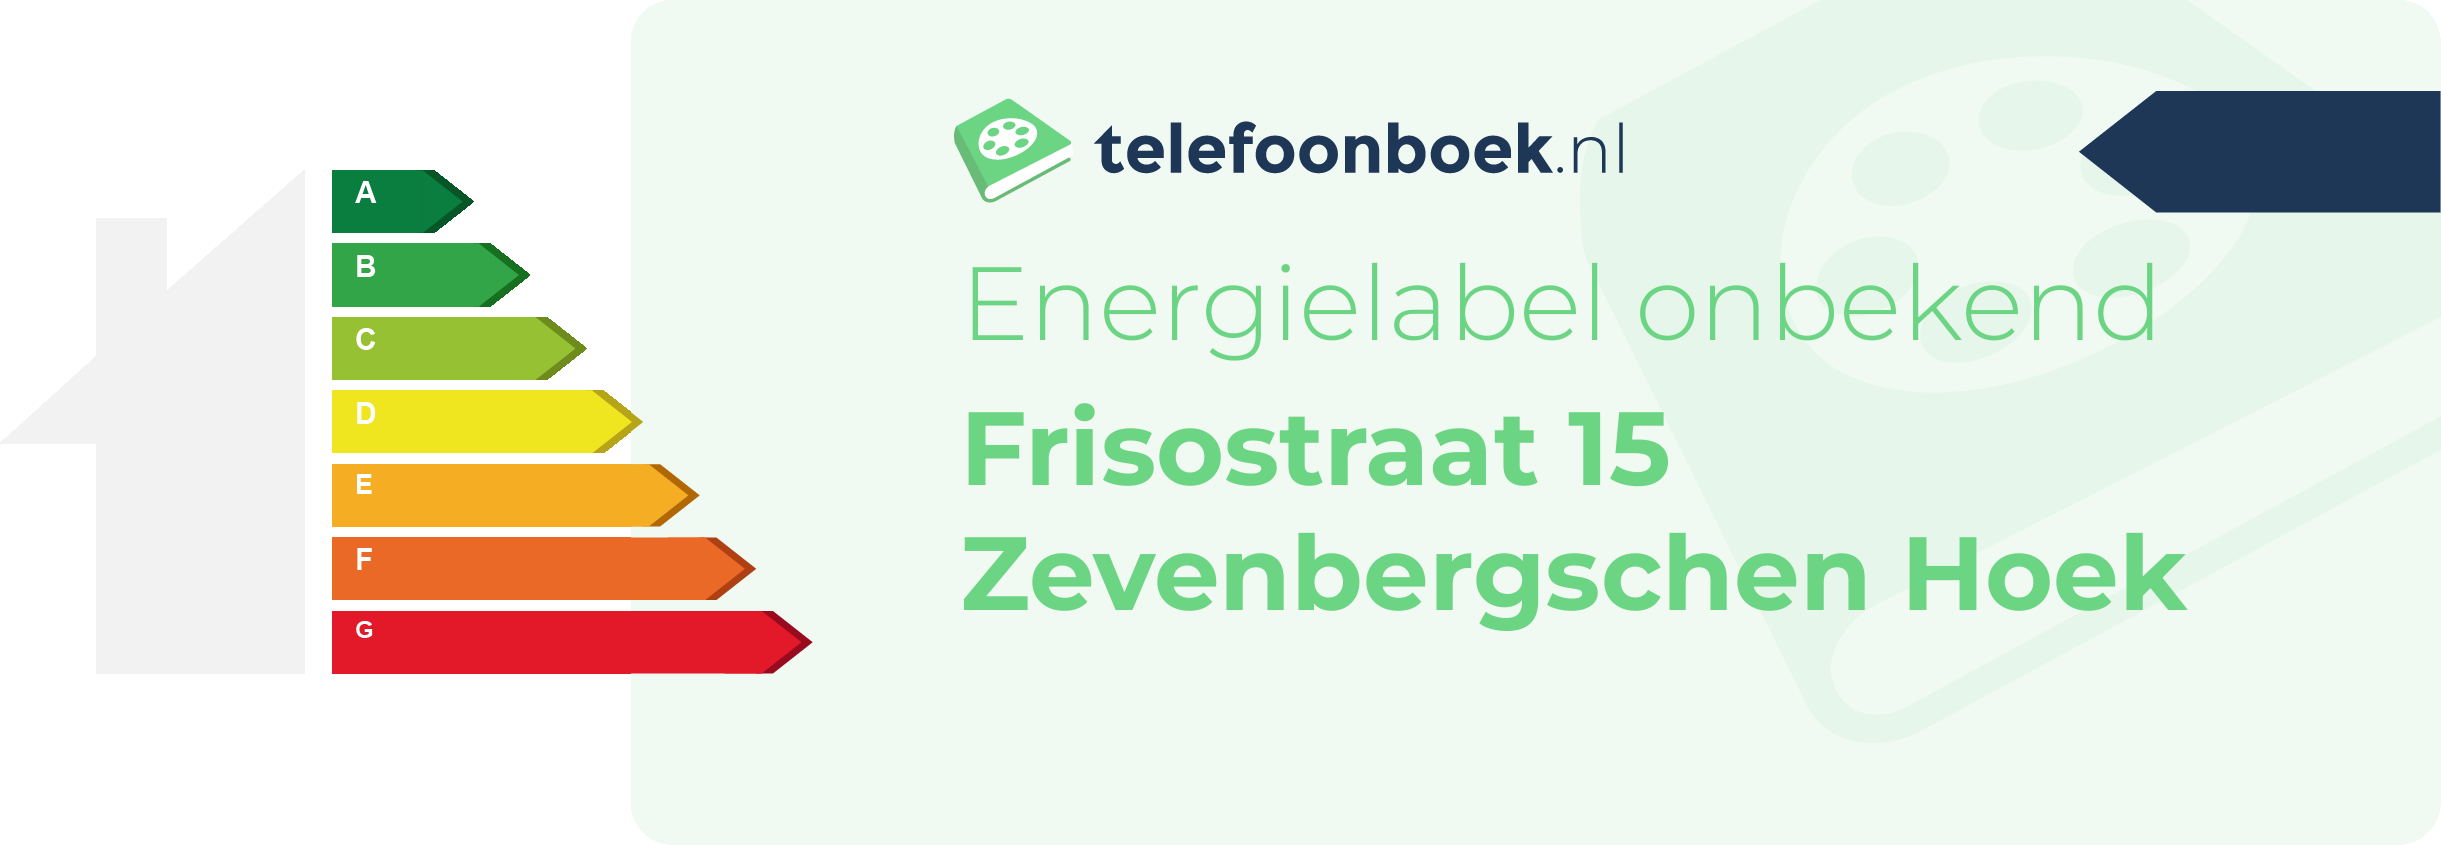 Energielabel Frisostraat 15 Zevenbergschen Hoek